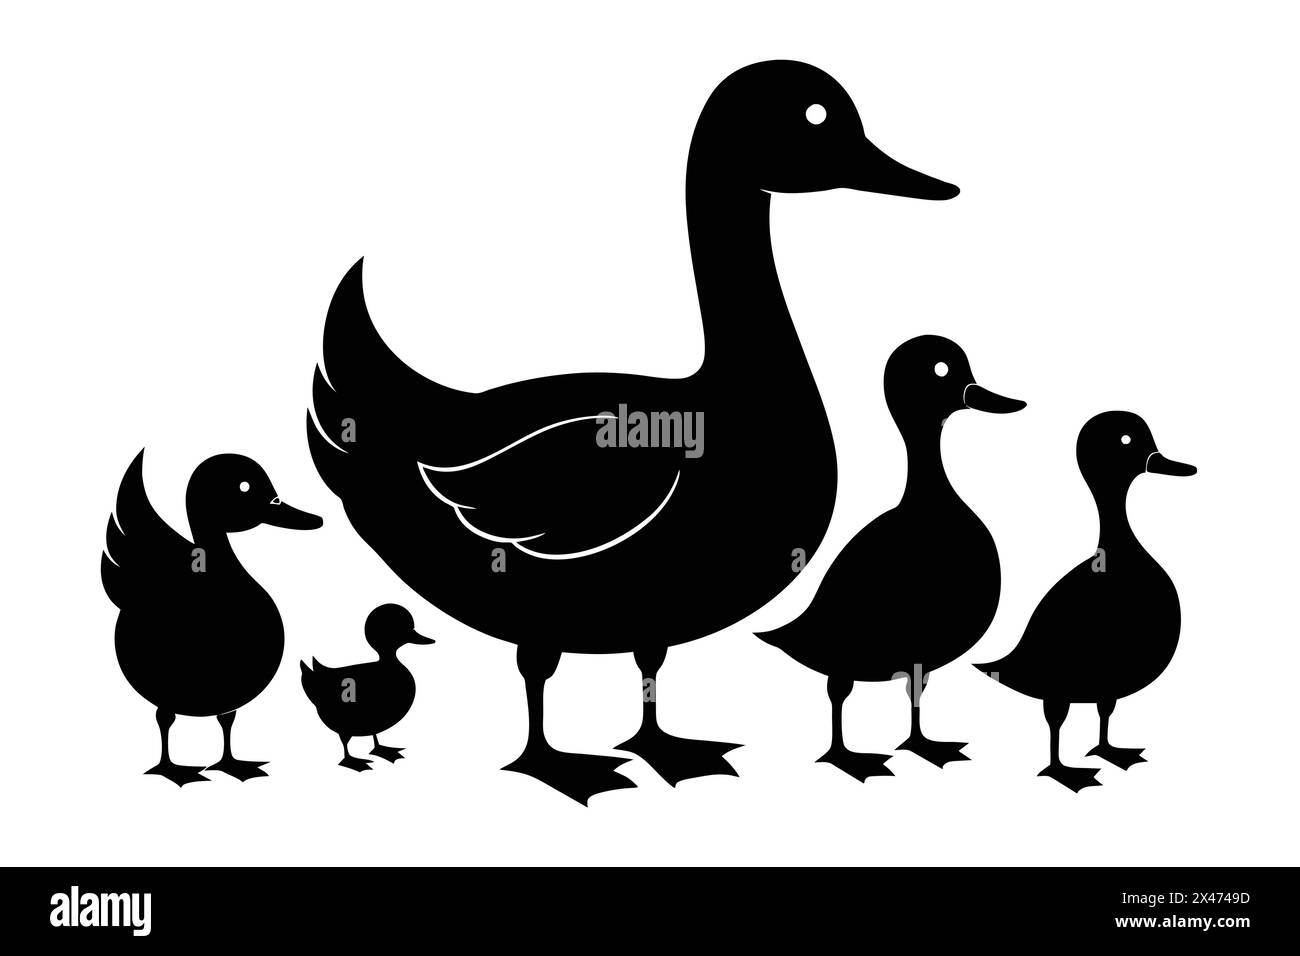 Illustrazione vettoriale della silhouette di Duck Collection Illustrazione Vettoriale